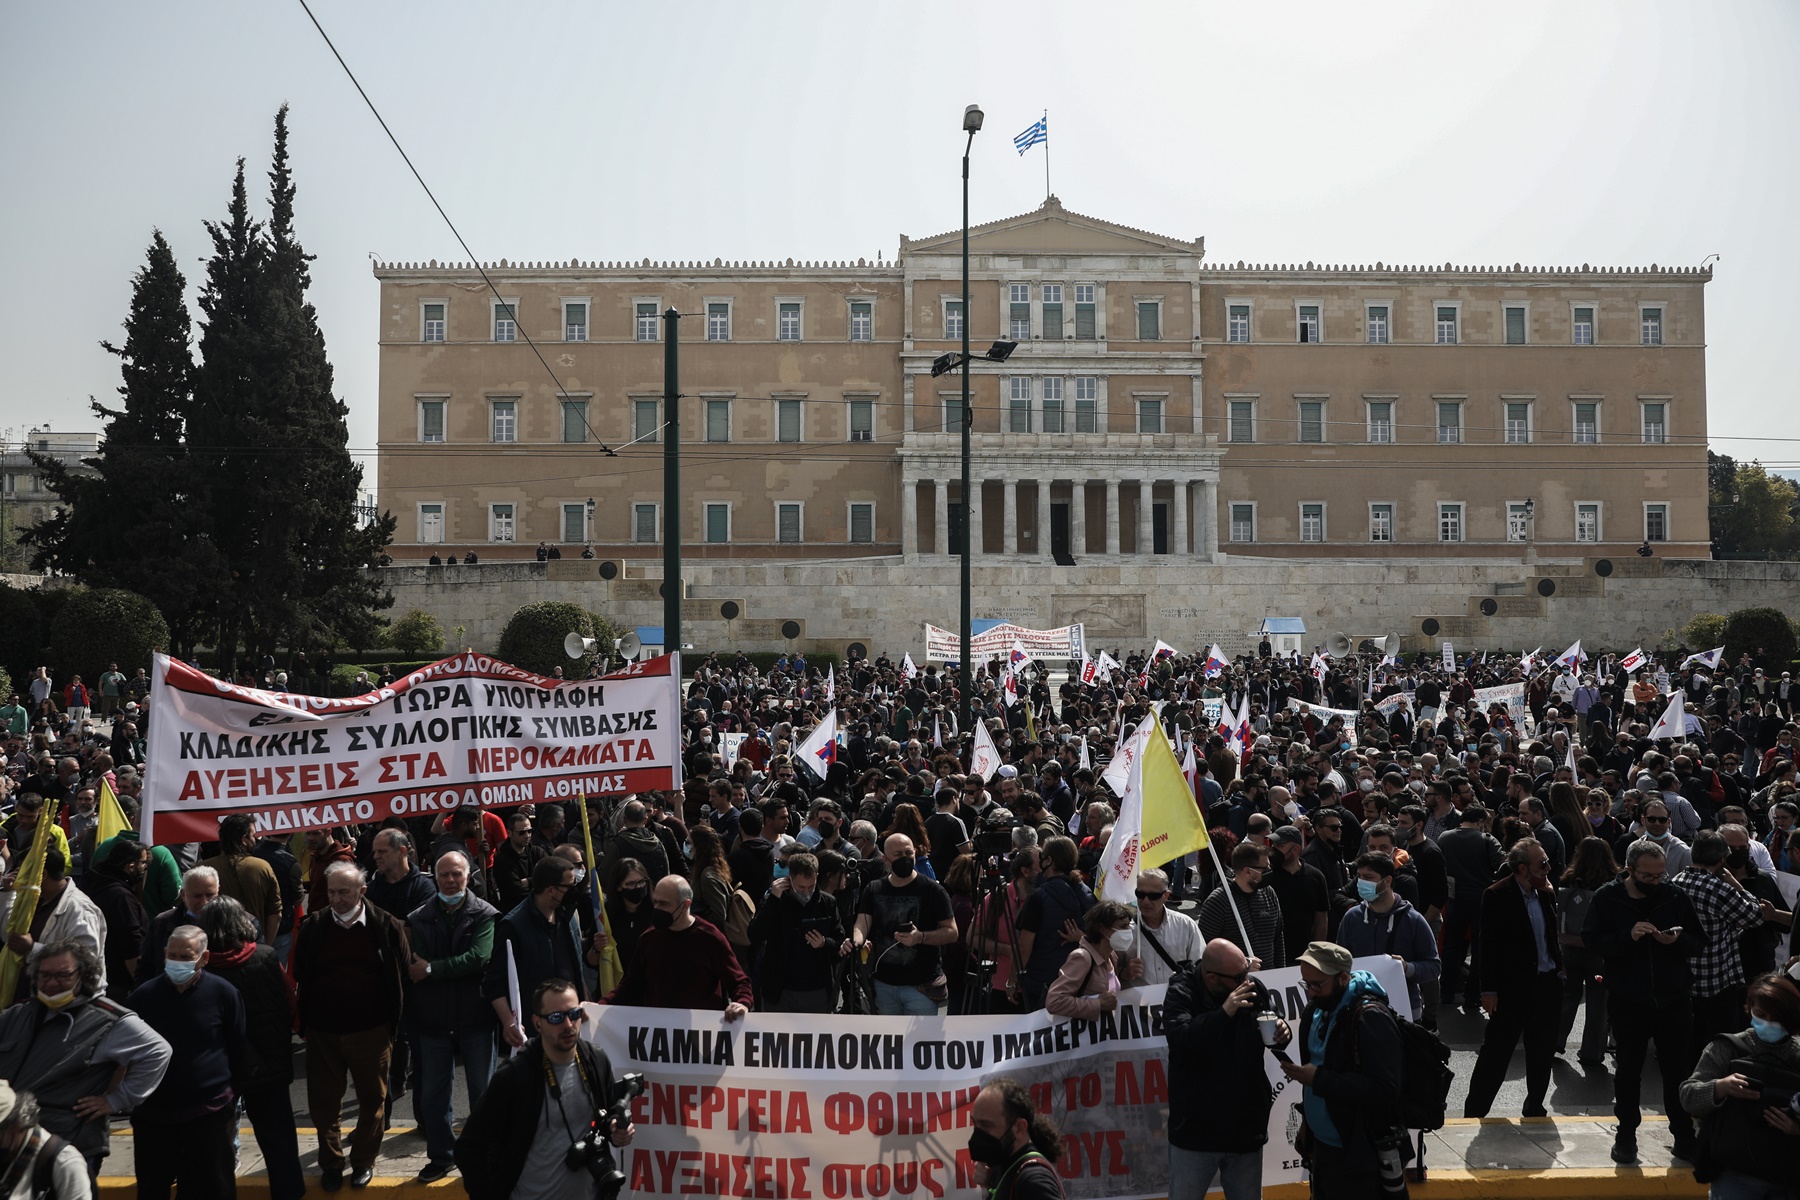 Απεργία 6/4 – Αθήνα τώρα: Σε εξέλιξη οι συγκεντρώσεις, απροσπέλαστο το κέντρο